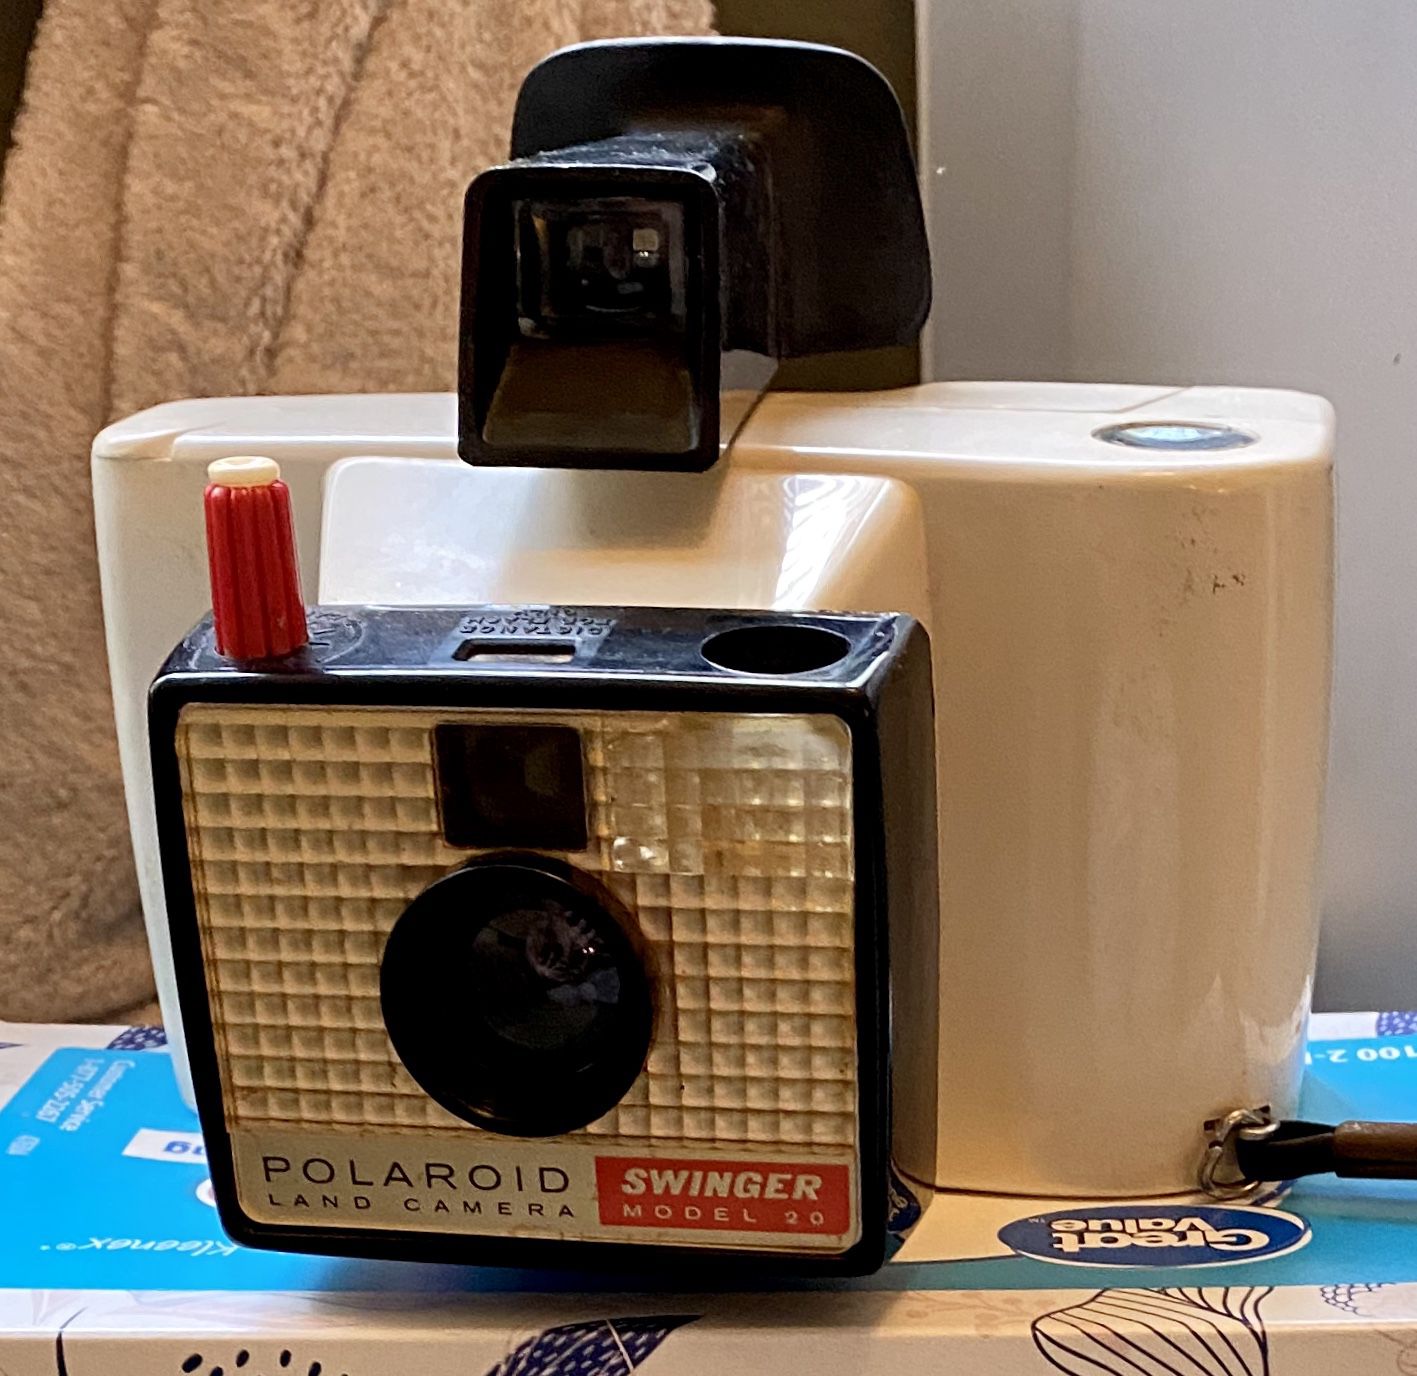 Swinger model 20 - Polaroid land camera